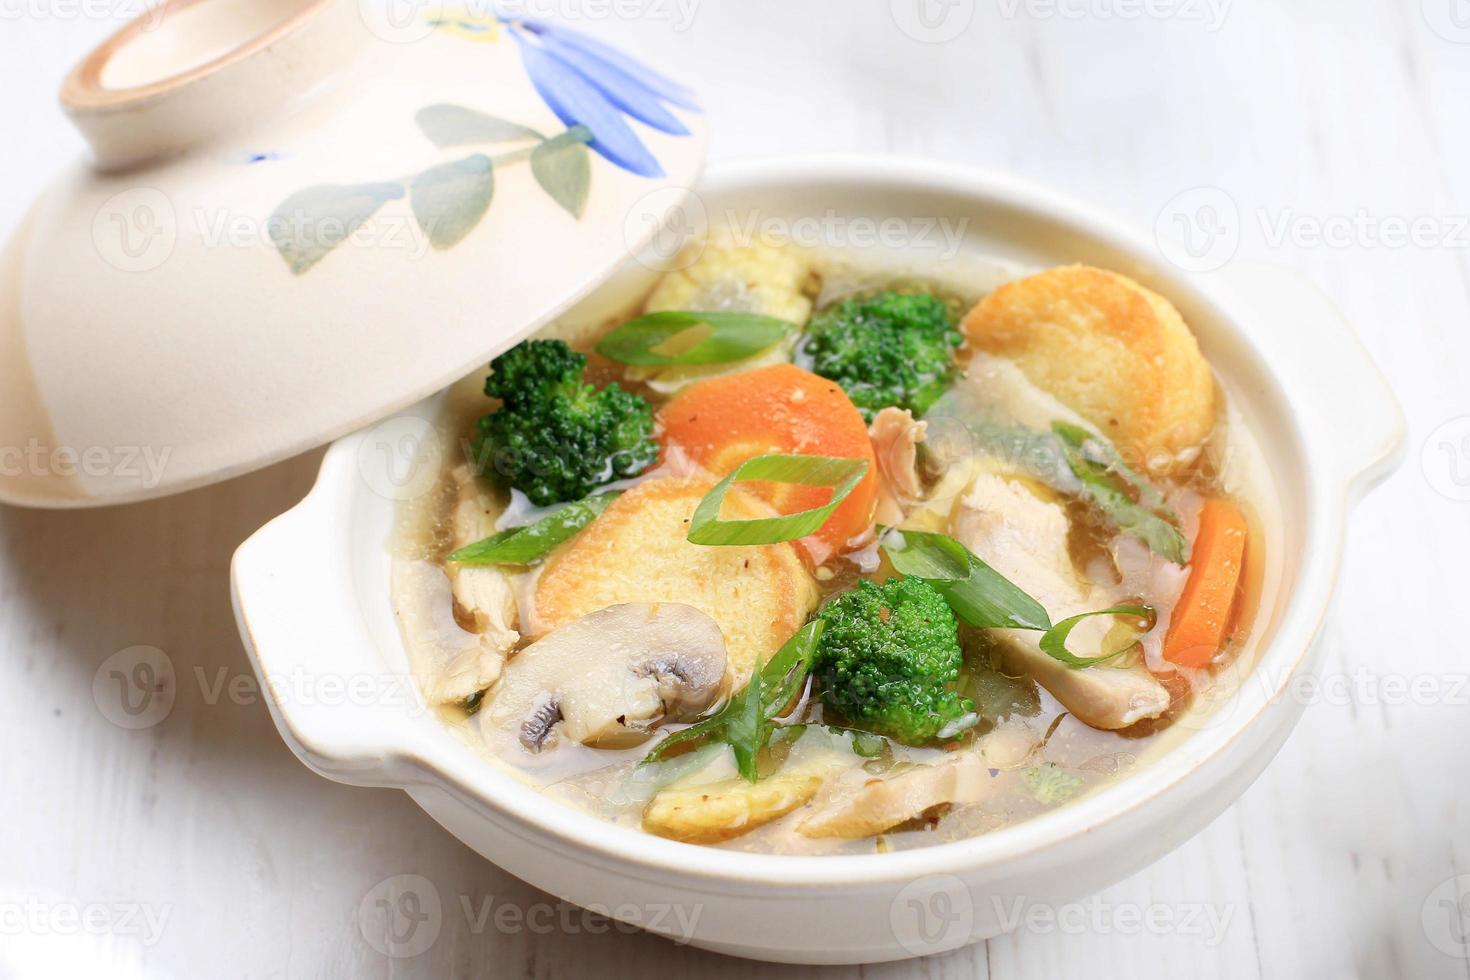 sapo tofu eller sapo tahu, kinesisk restaurang maträtt med japansk tofu, grönsak, svamp, kyckling eller skaldjur foto